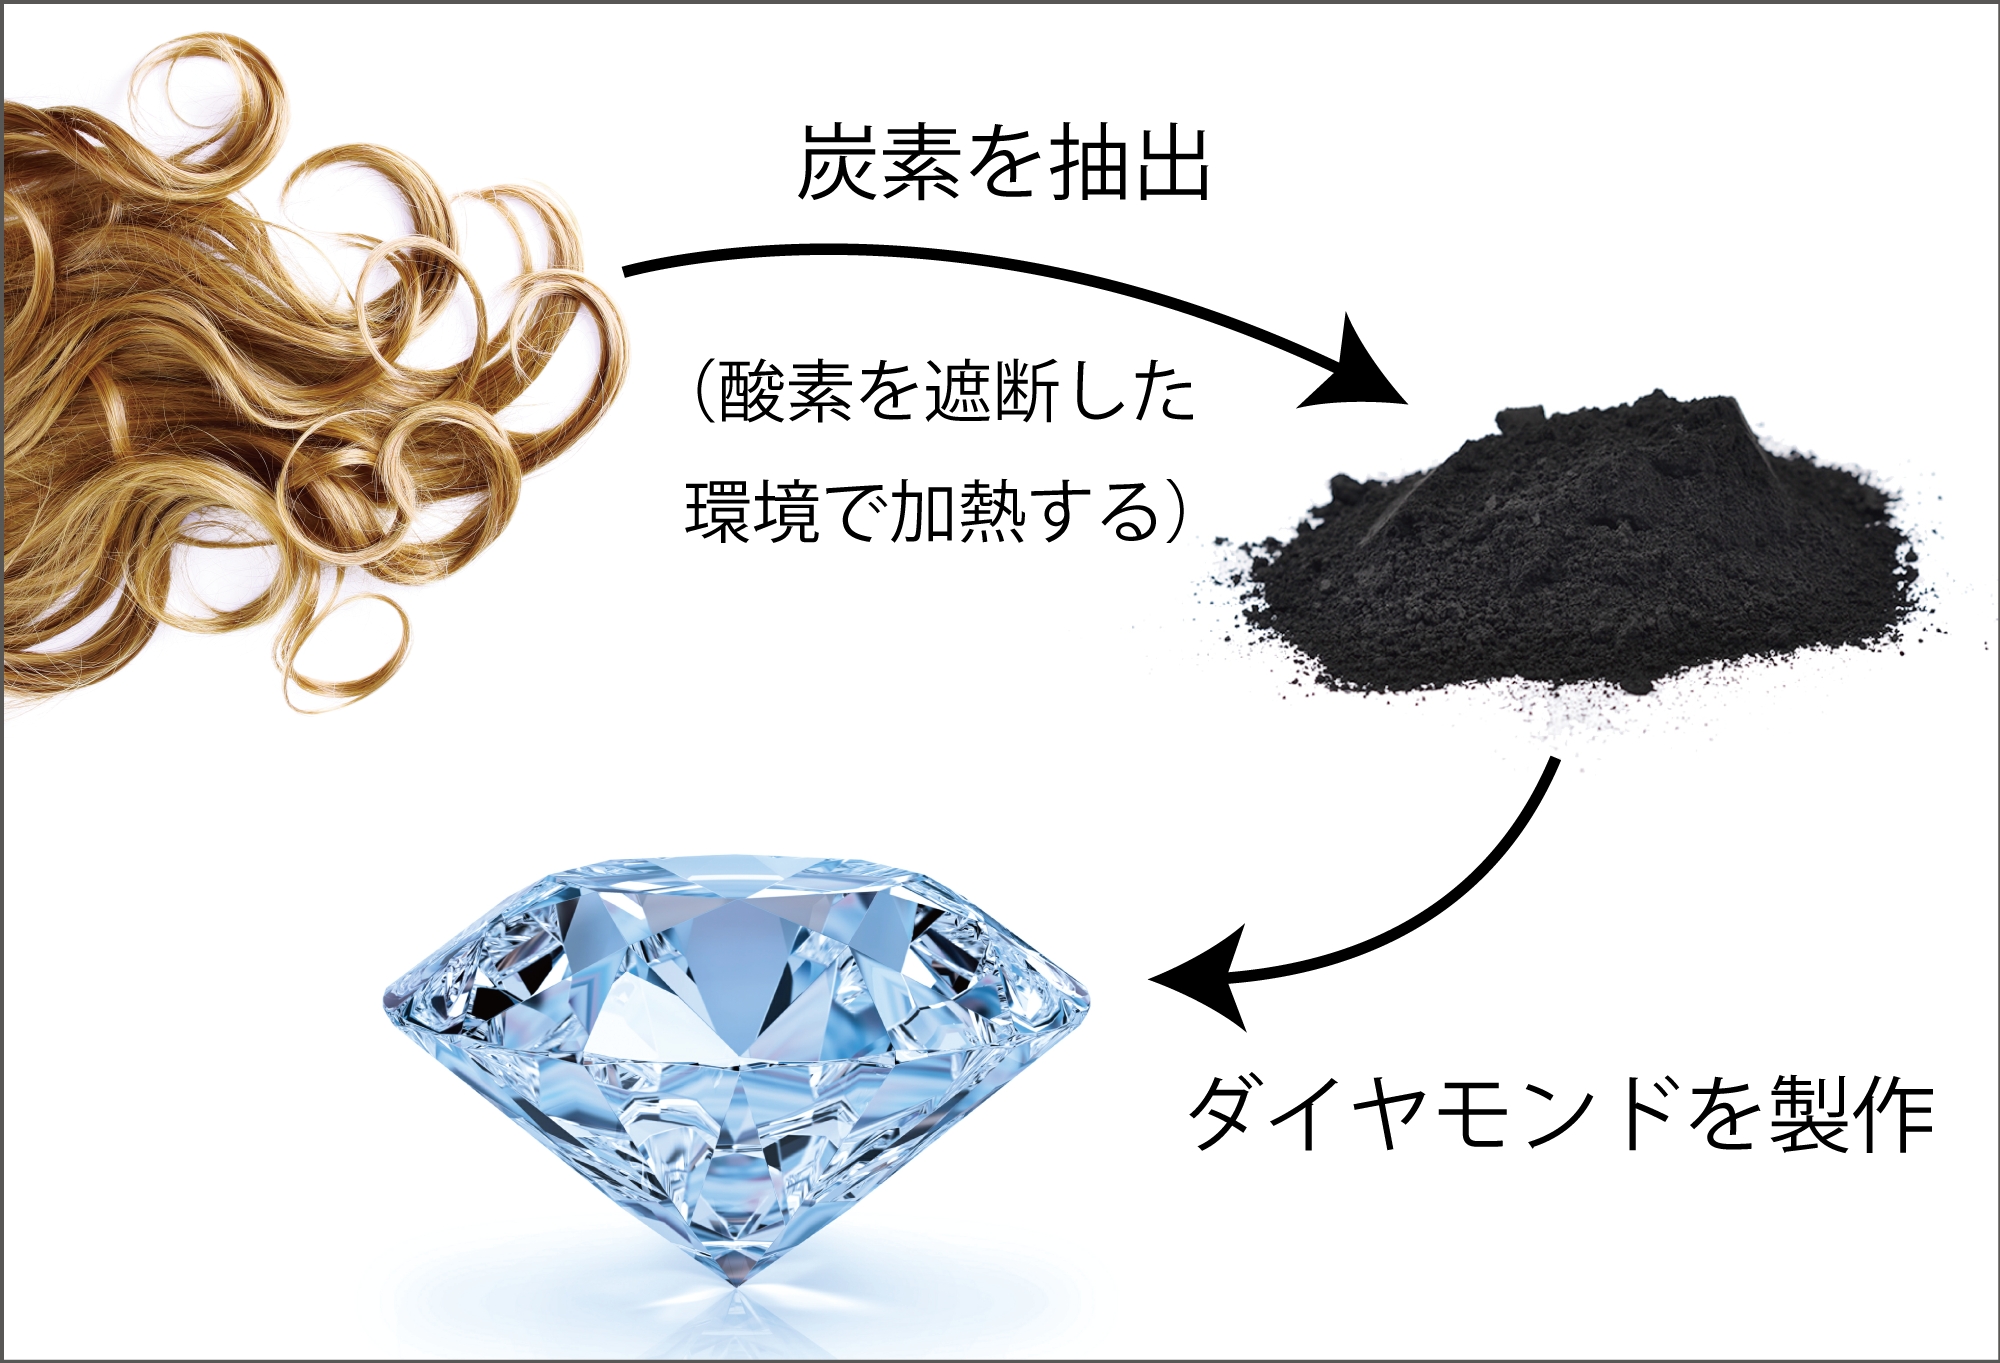 遺骨ダイヤモンドのアルゴダンザ 髪の毛から製作するヘアー ダイヤモンドの提供を開始 有限会社アルゴダンザ ジャパンのプレスリリース